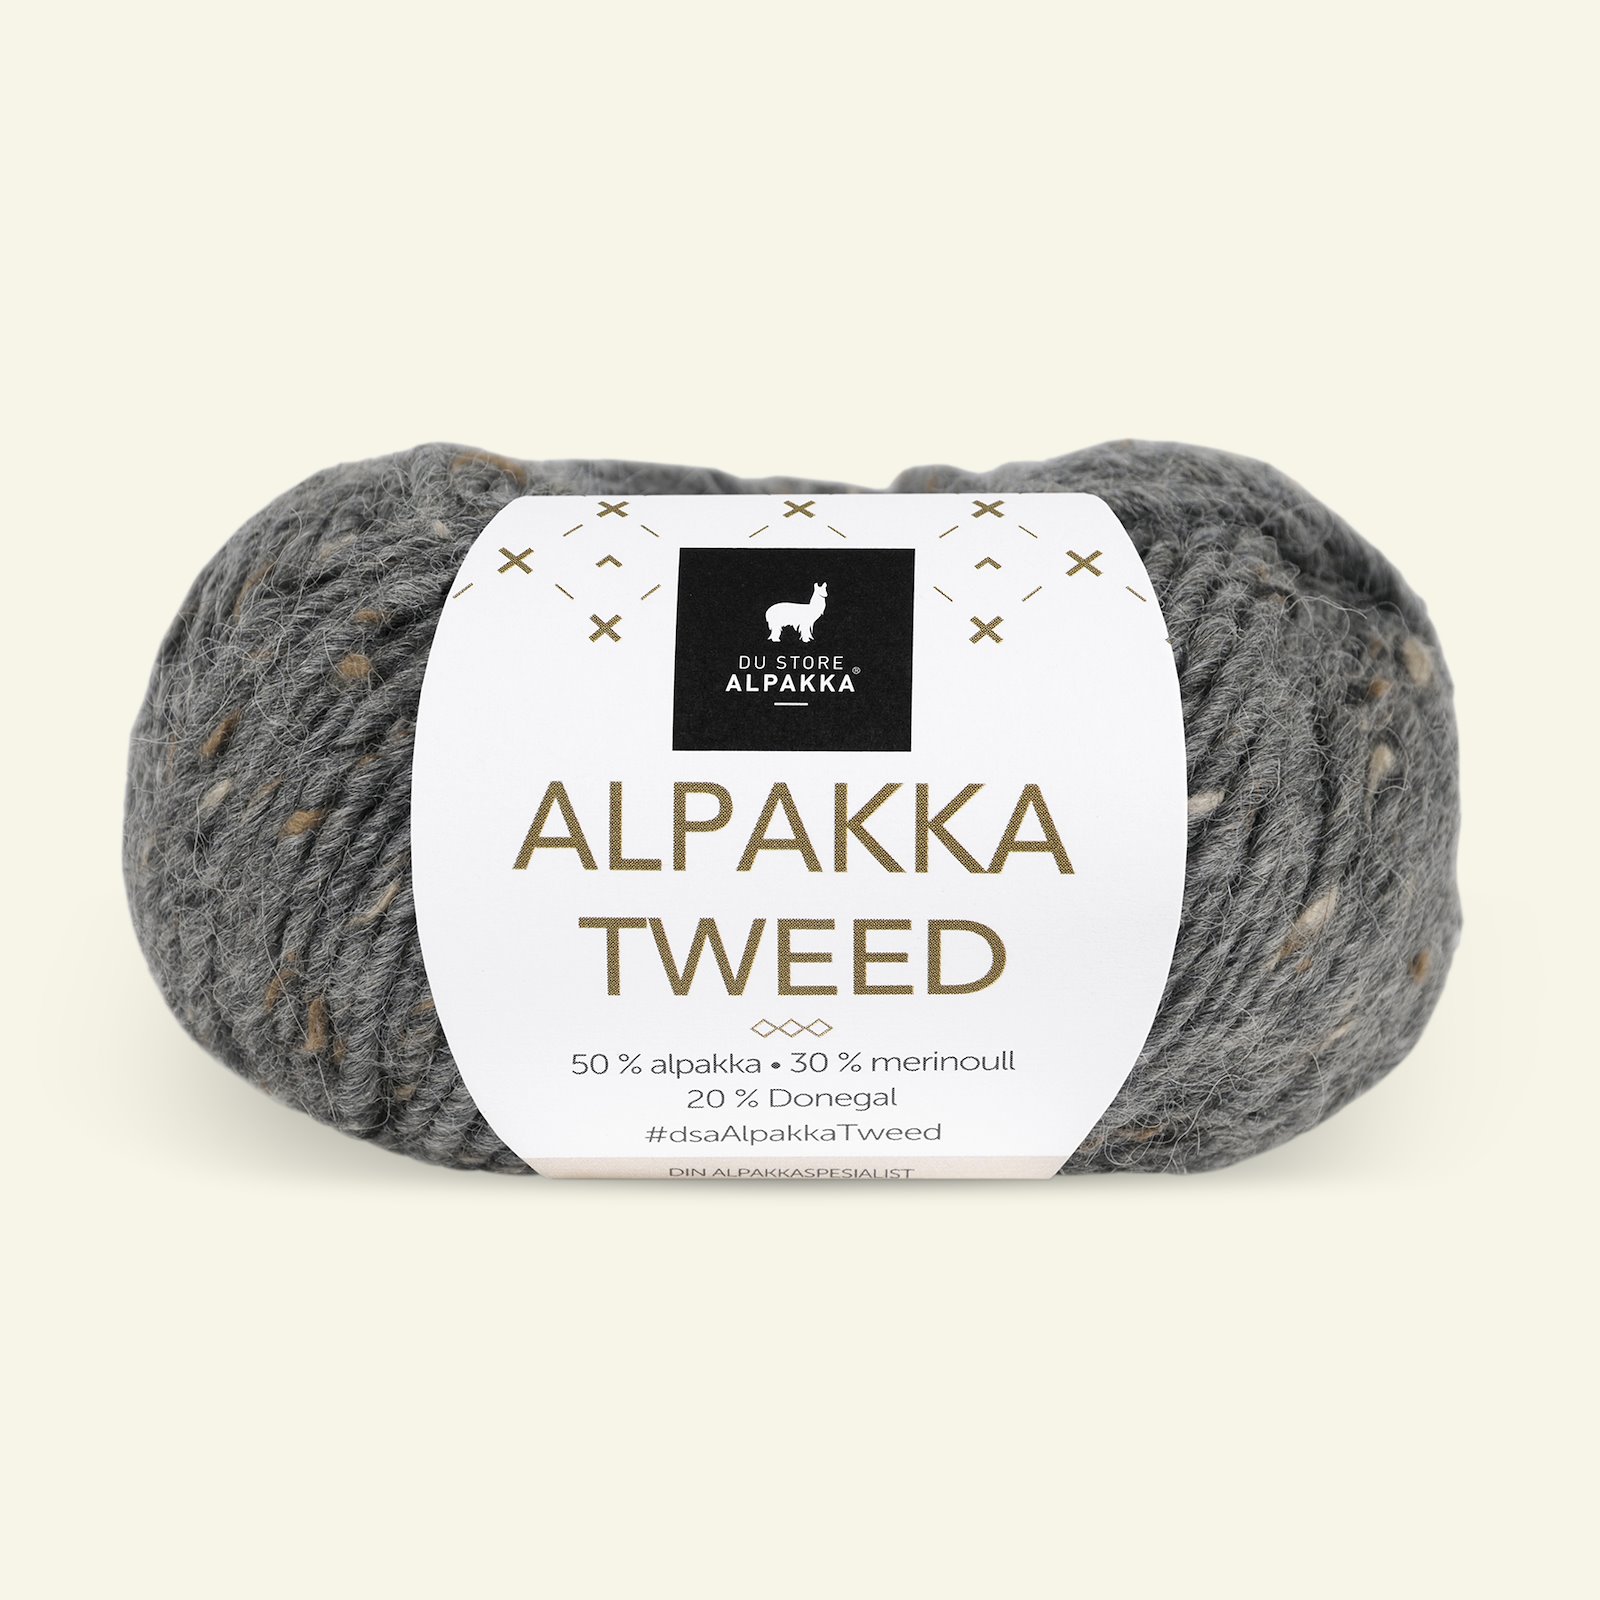 Du Store Alpakka, tweed ulgarn "Alpakka Tweed", mørk grå (102) 90000521_pack